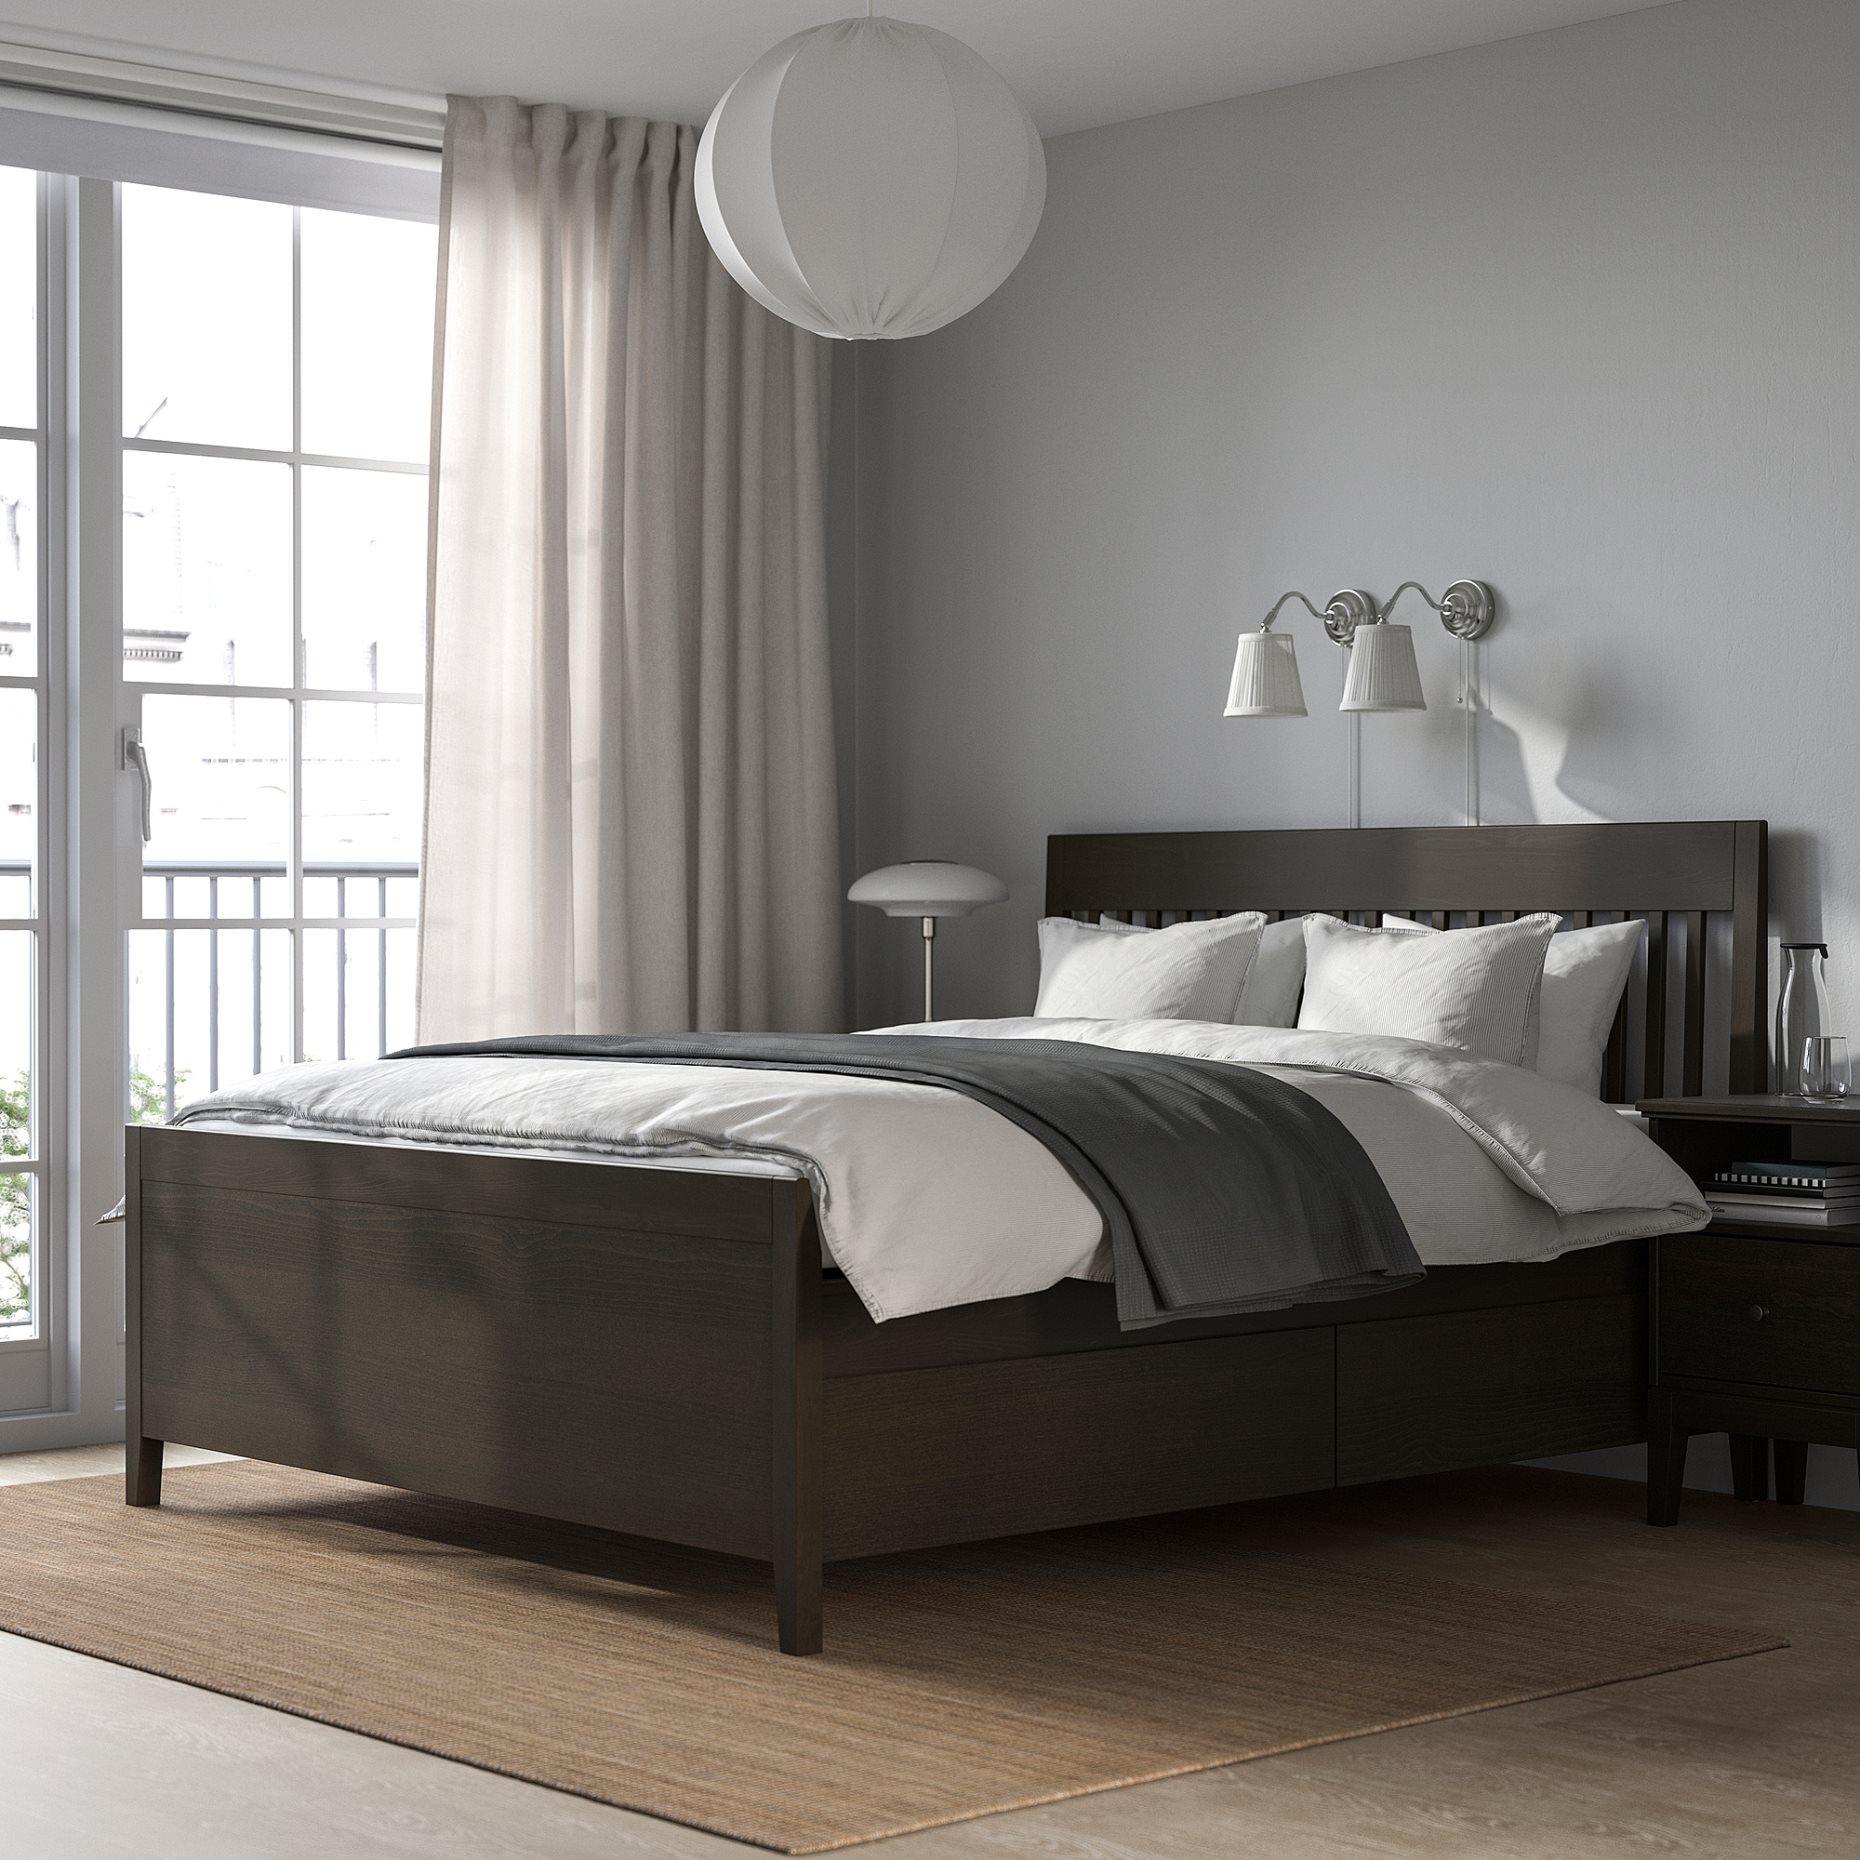 IDANÄS, bed frame with storage, 140x200 cm, 393.922.19